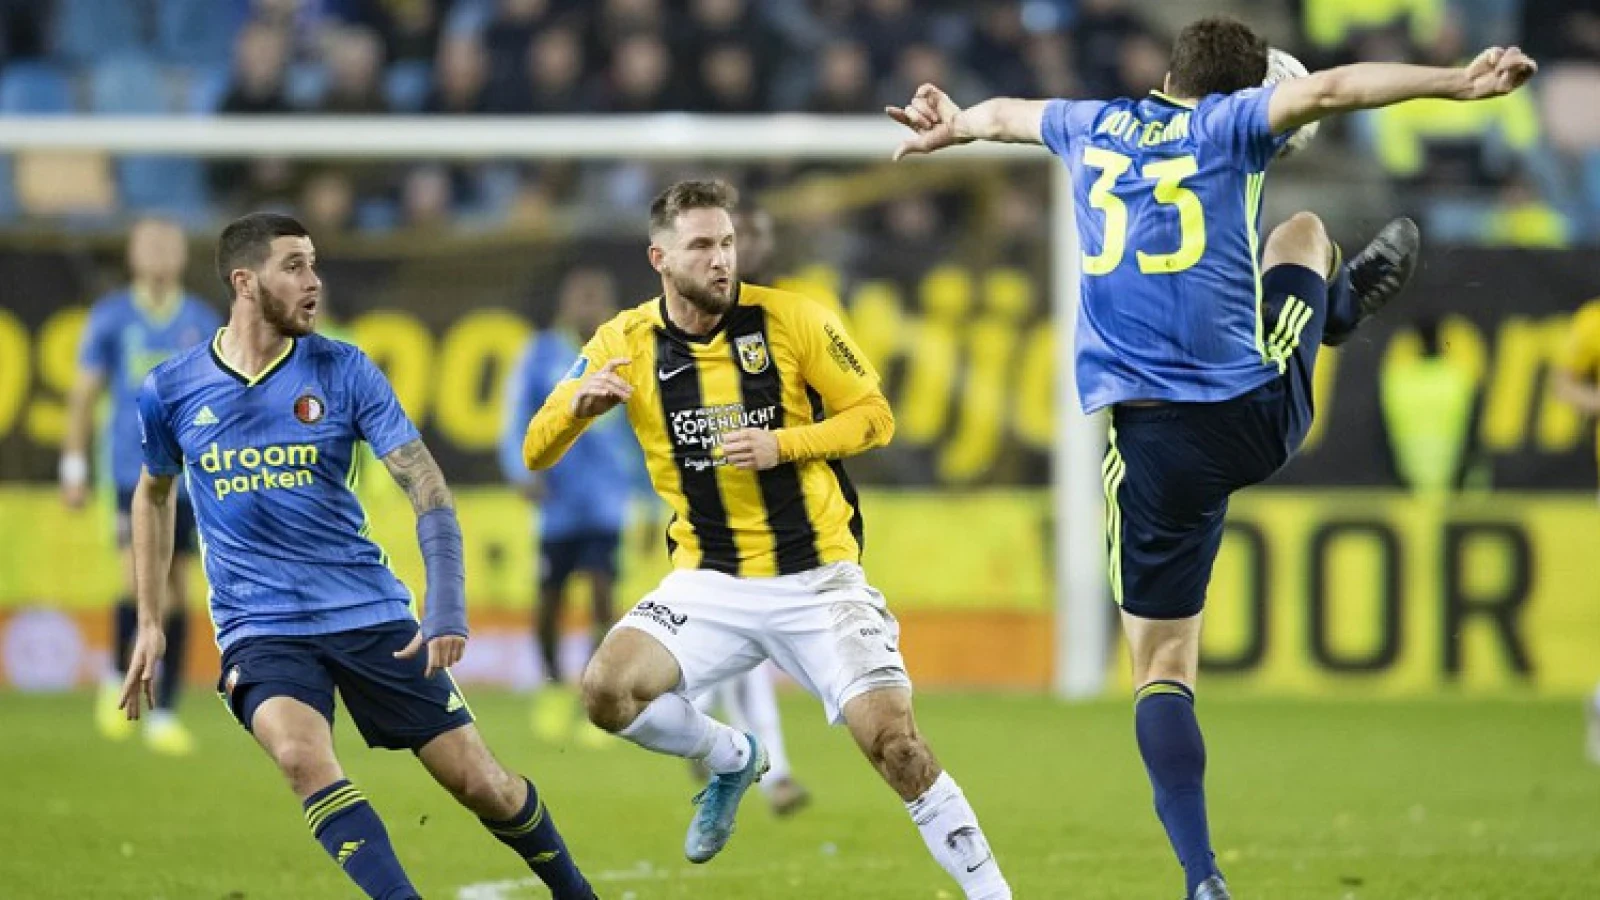 Verdediger heeft laatste wedstrijd Feyenoord mogelijk al gespeeld: 'Een rare gedachte'